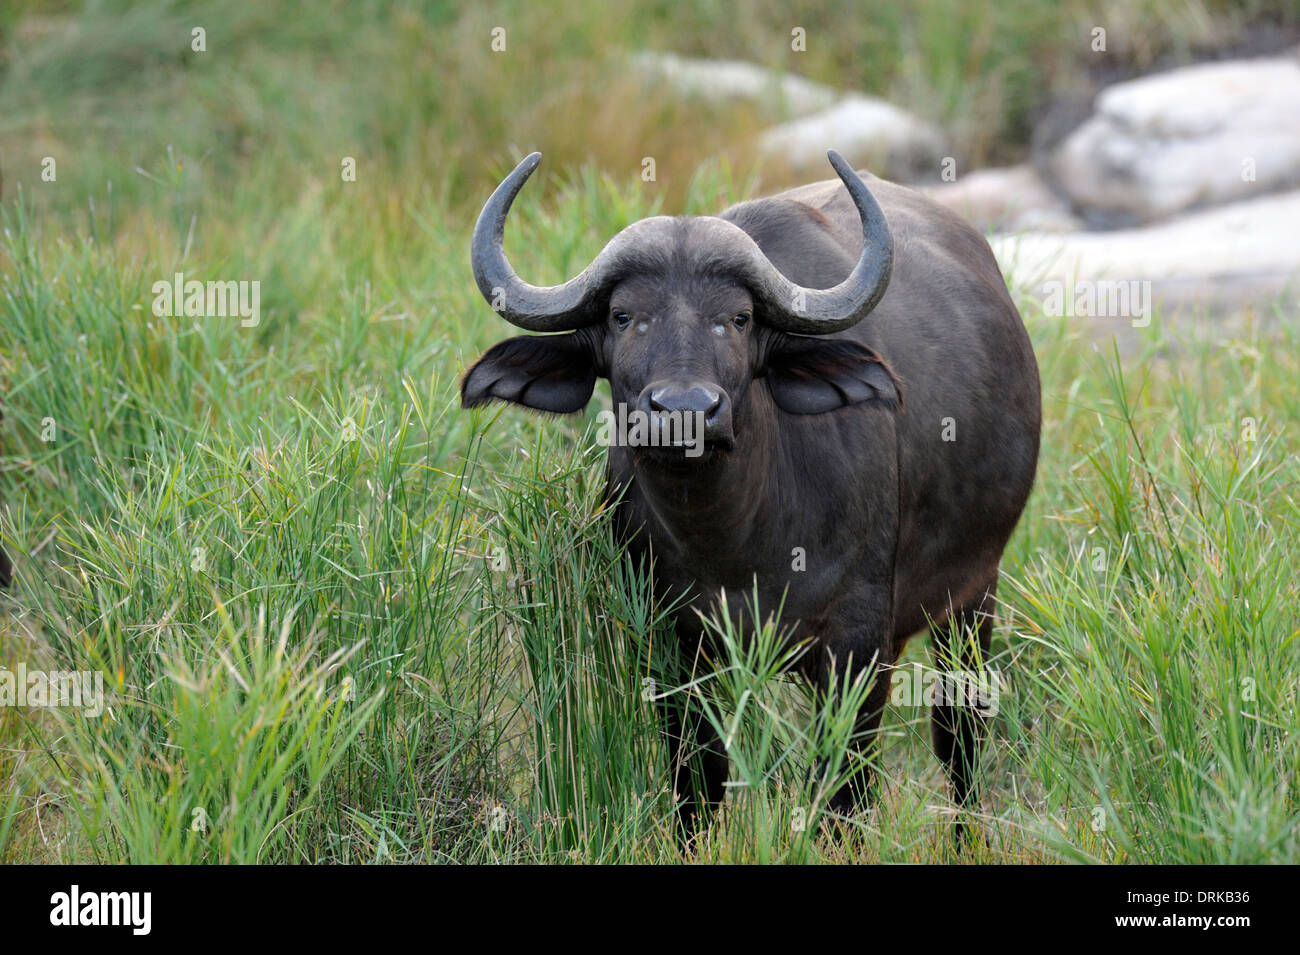 El búfalo africano (Syncerus, Cape búfalo caffer) en el Parque Nacional Kruger, Sudáfrica Foto de stock